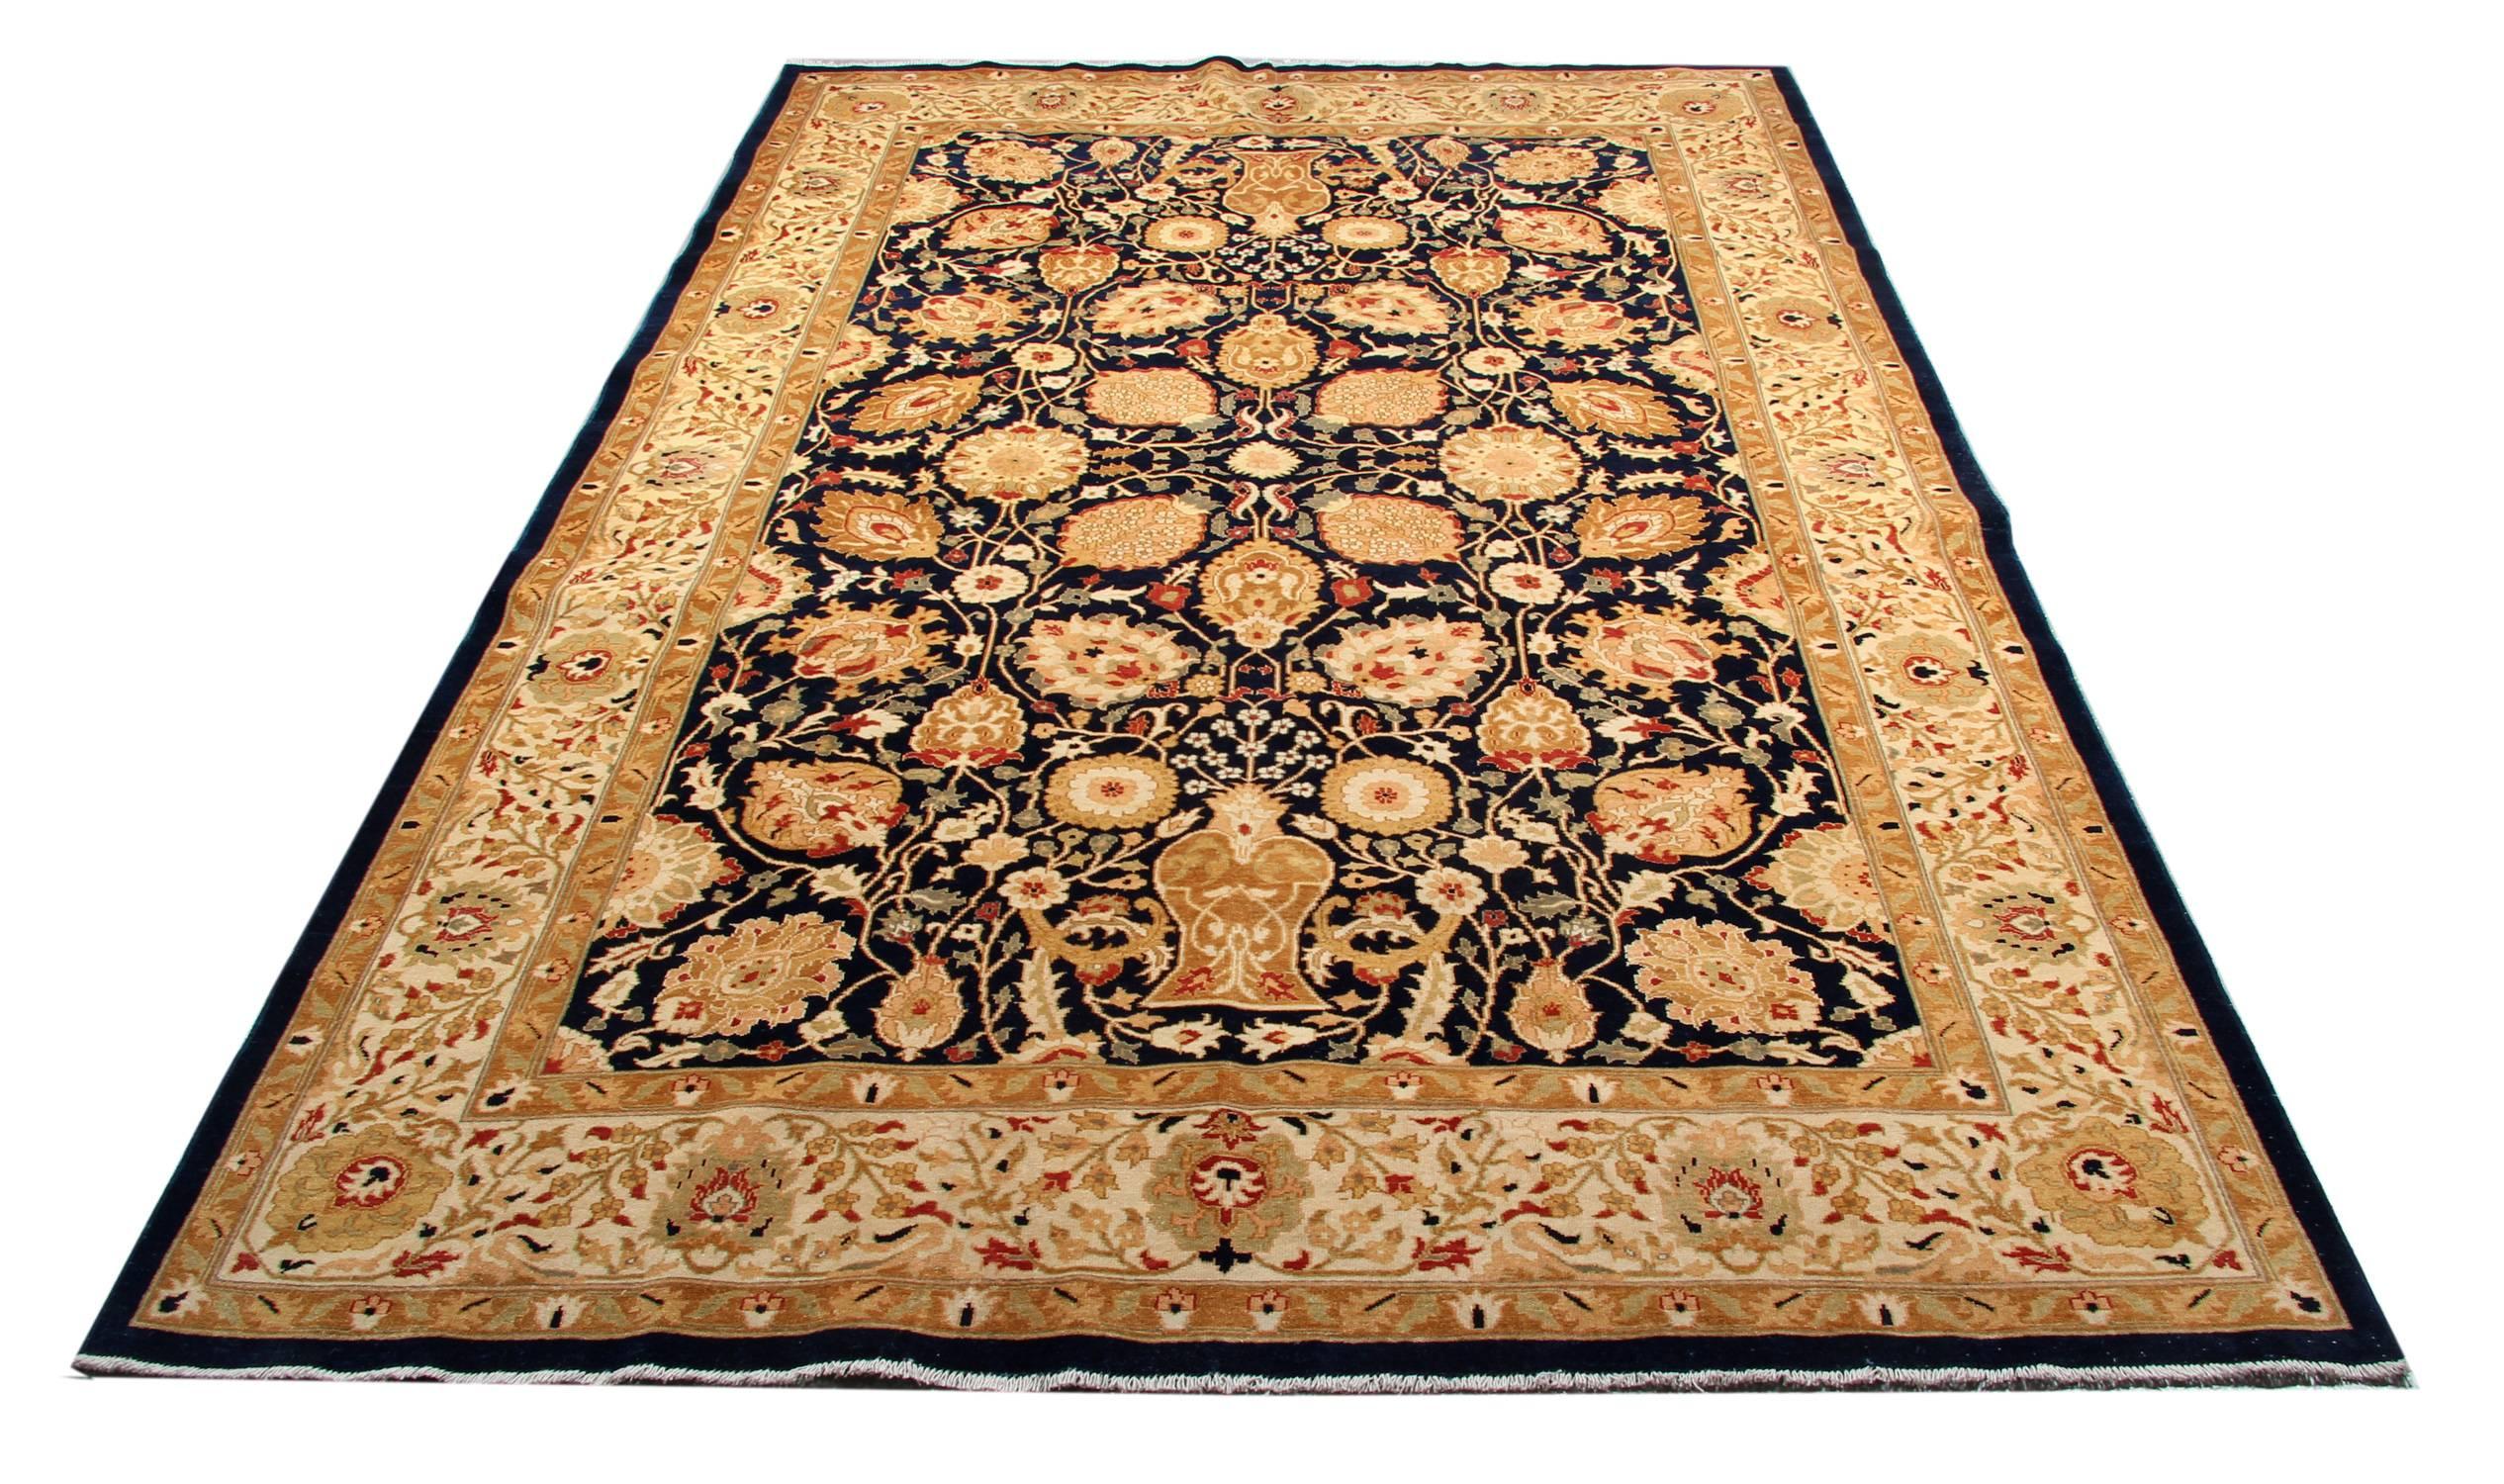 Ce tapis oriental doré fait main est un tapis tissé Sultanabad de style Ziegler, fabriqué sur nos métiers par nos maîtres tisserands en Afghanistan. Ce tapis à motifs floraux fait partie de nos tapis de luxe fabriqués sur nos propres métiers à